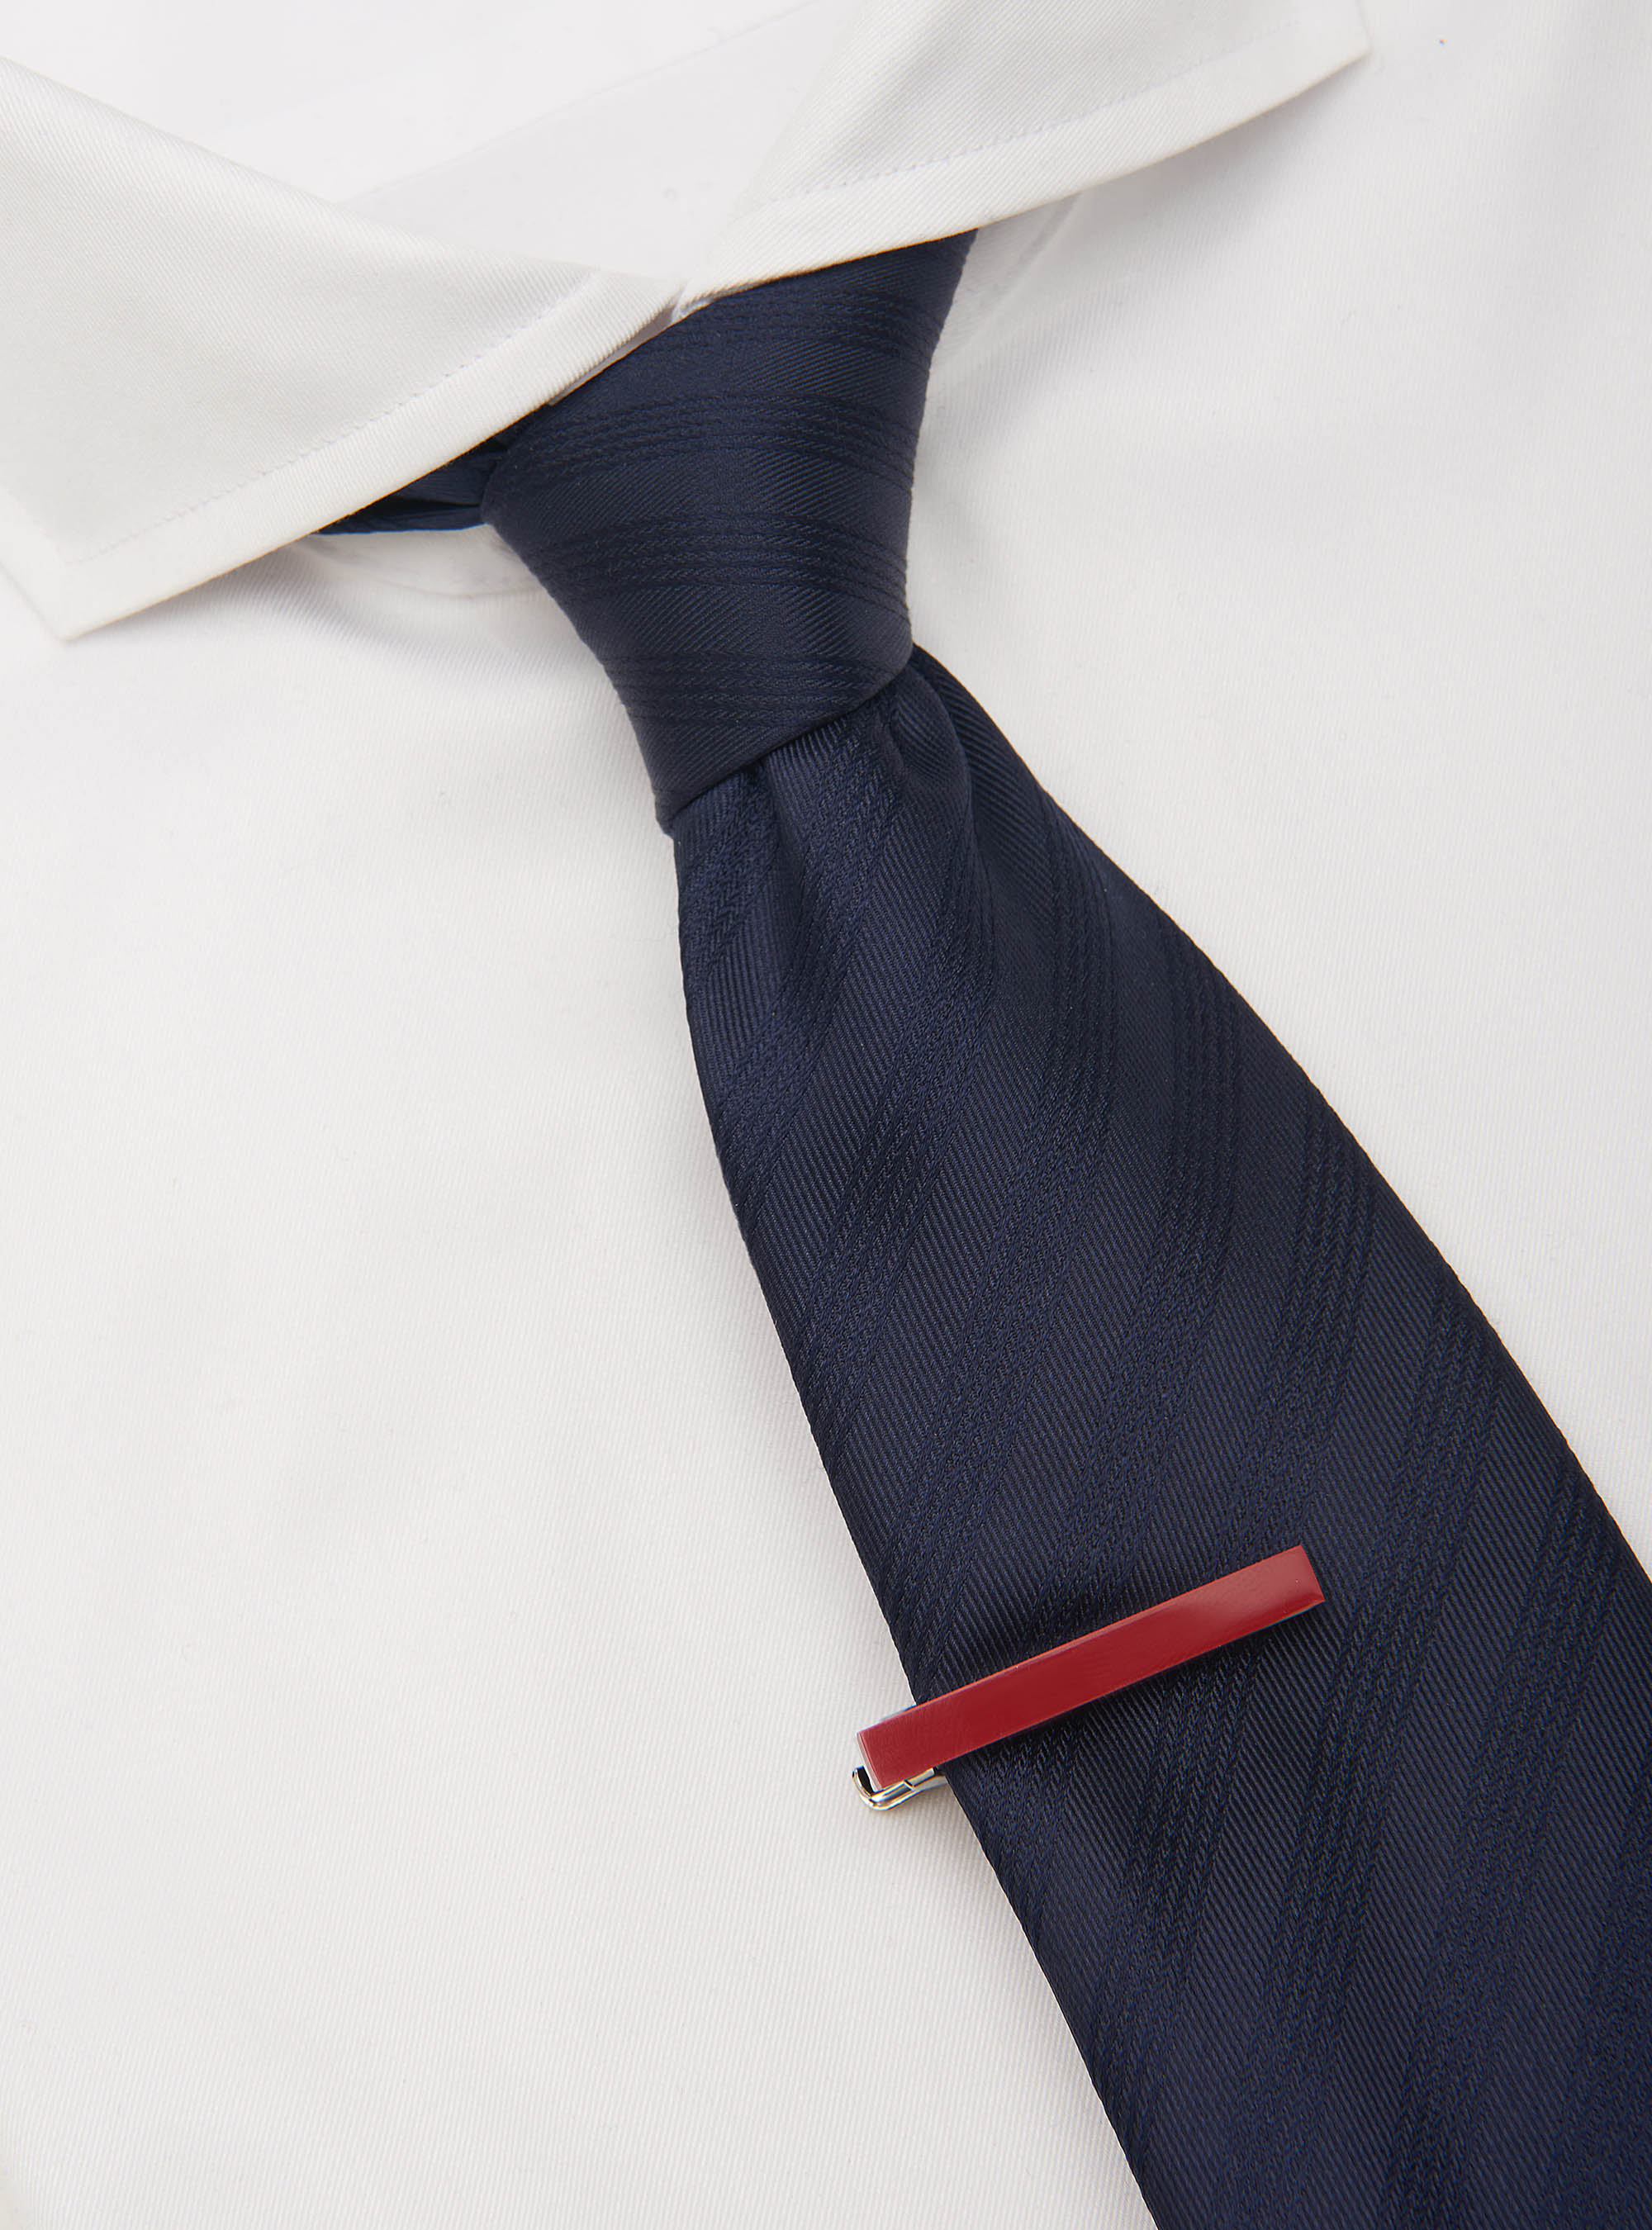 Pince à cravate | GutteridgeEU | Pinces a cravate Uomo